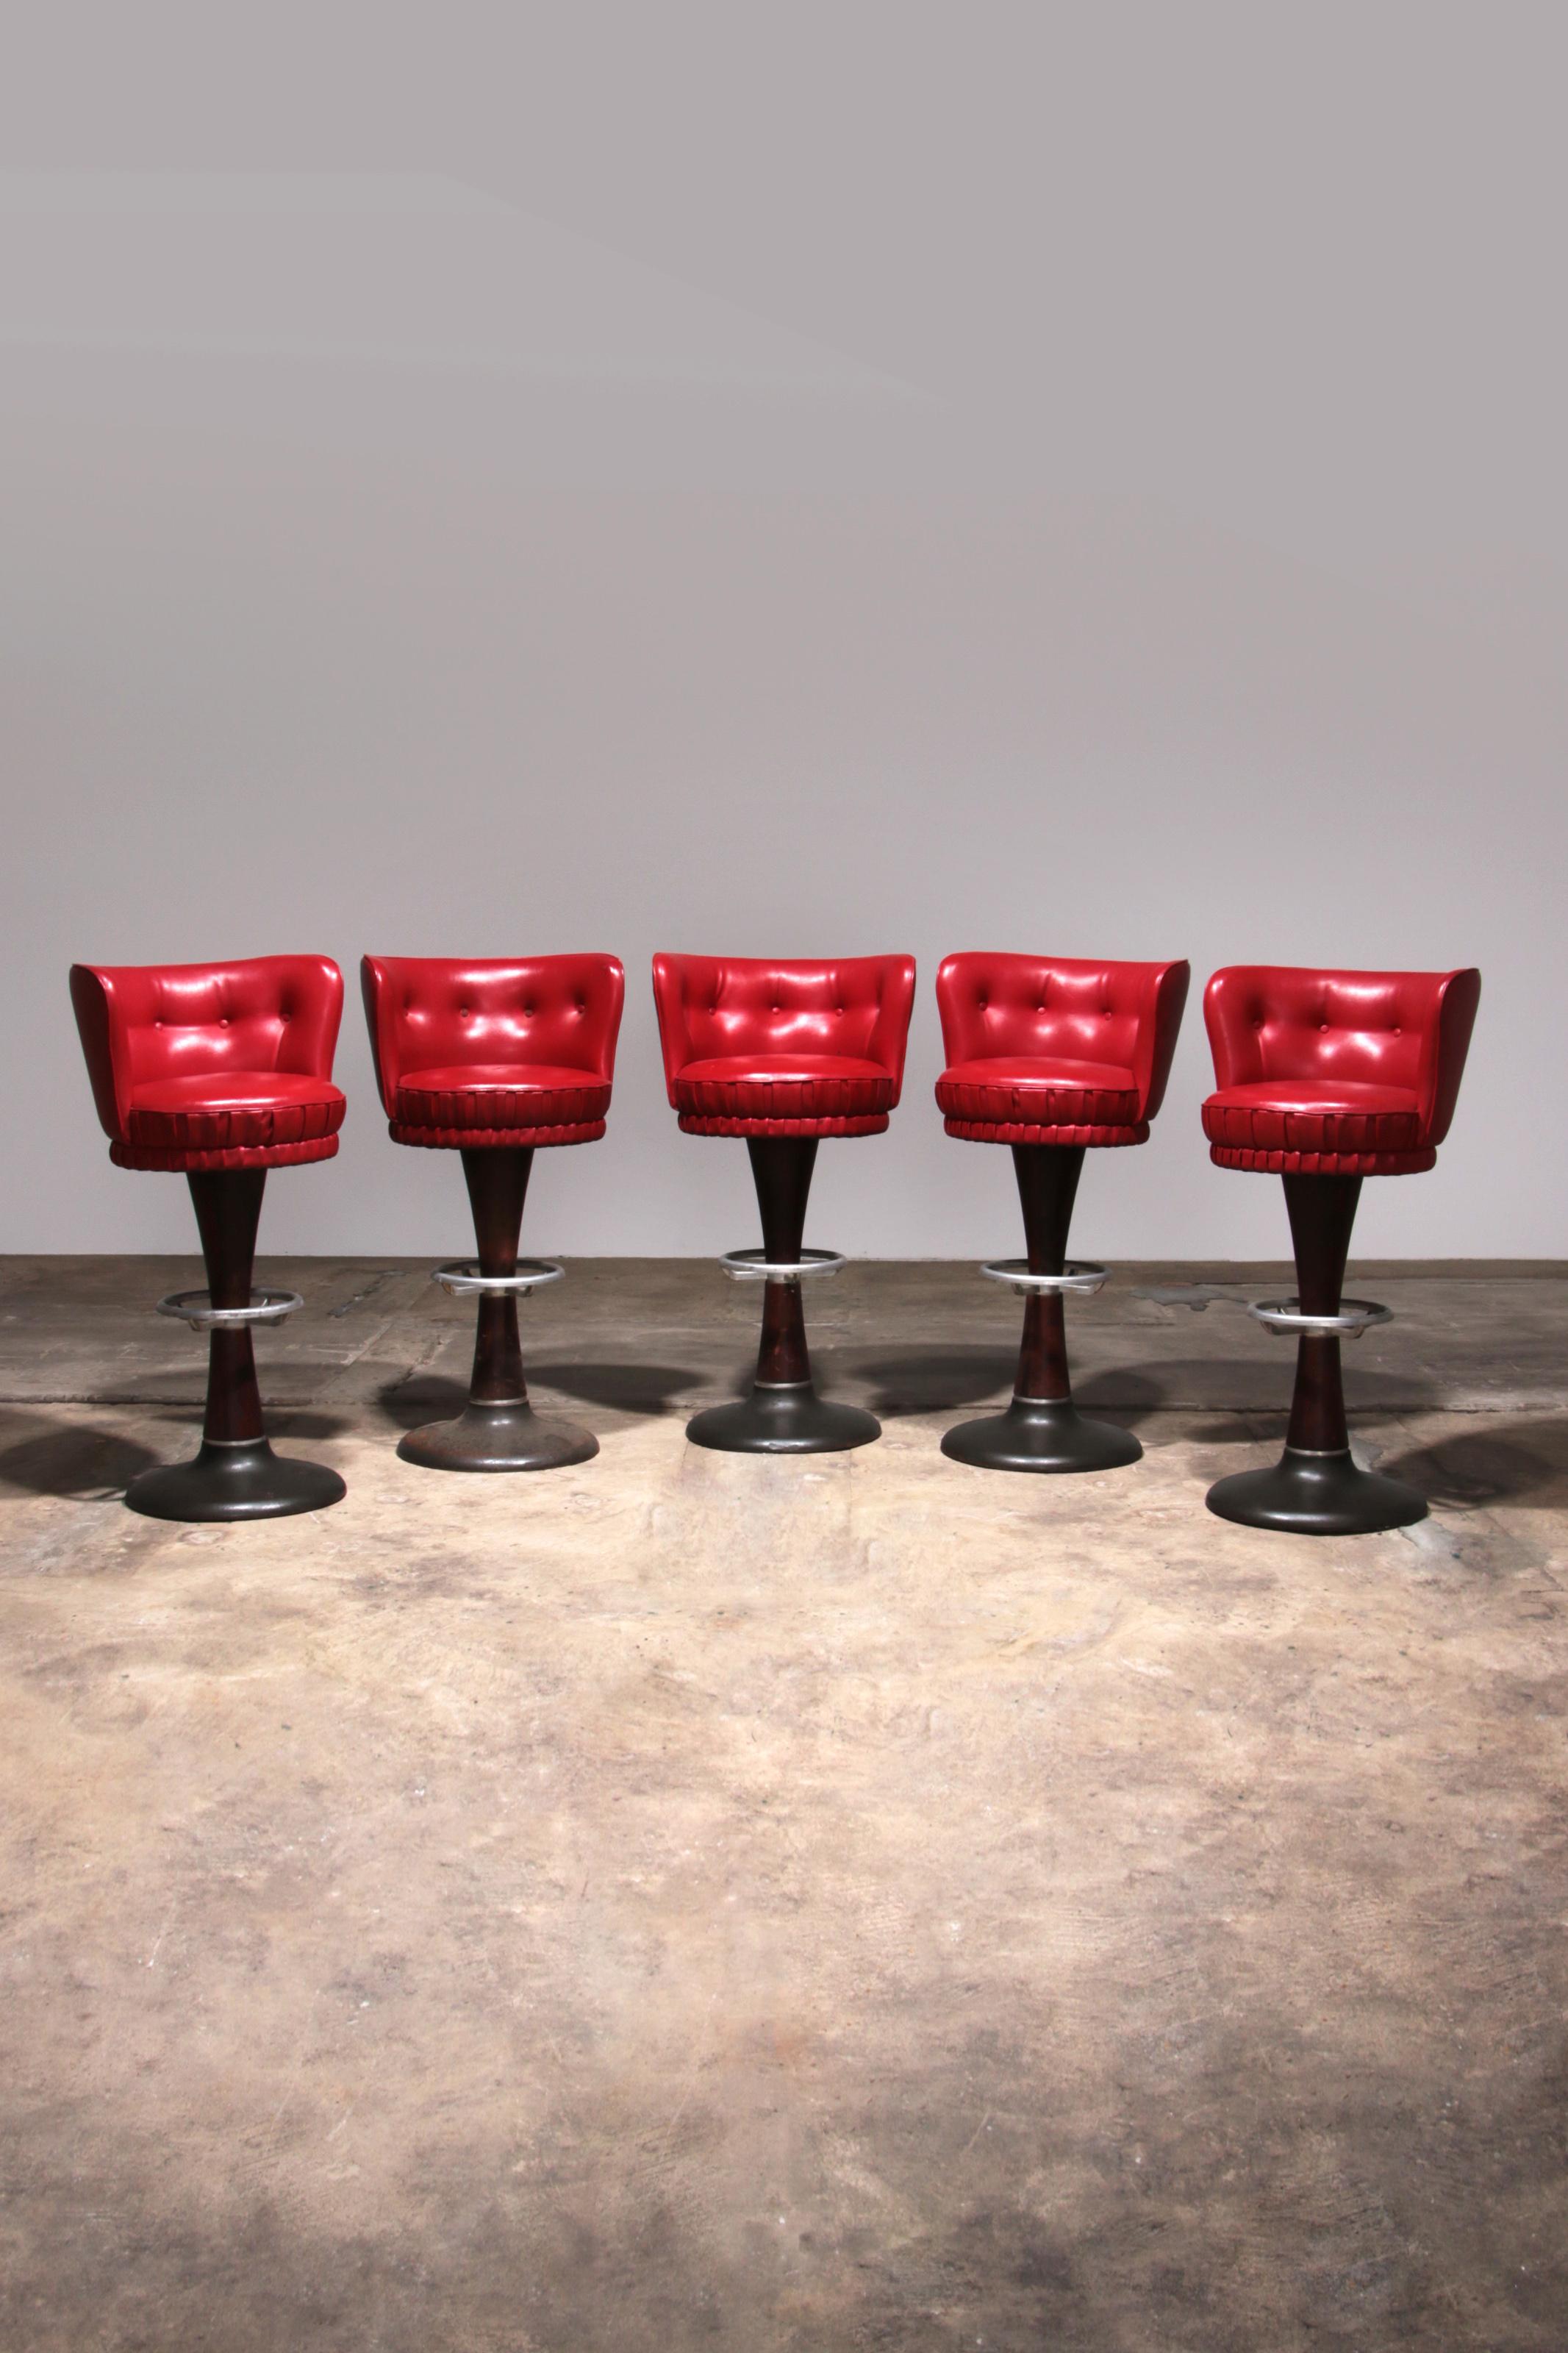 Captain's Bar Chair mit roter Lederpolsterung und Stahlgestell

Entdecken Sie die perfekte Kombination aus Stil und Komfort mit unserem Captains Bar Chair. Dieser einzigartige Stuhl mit seiner schönen roten Lederpolsterung und dem handgeschweißten